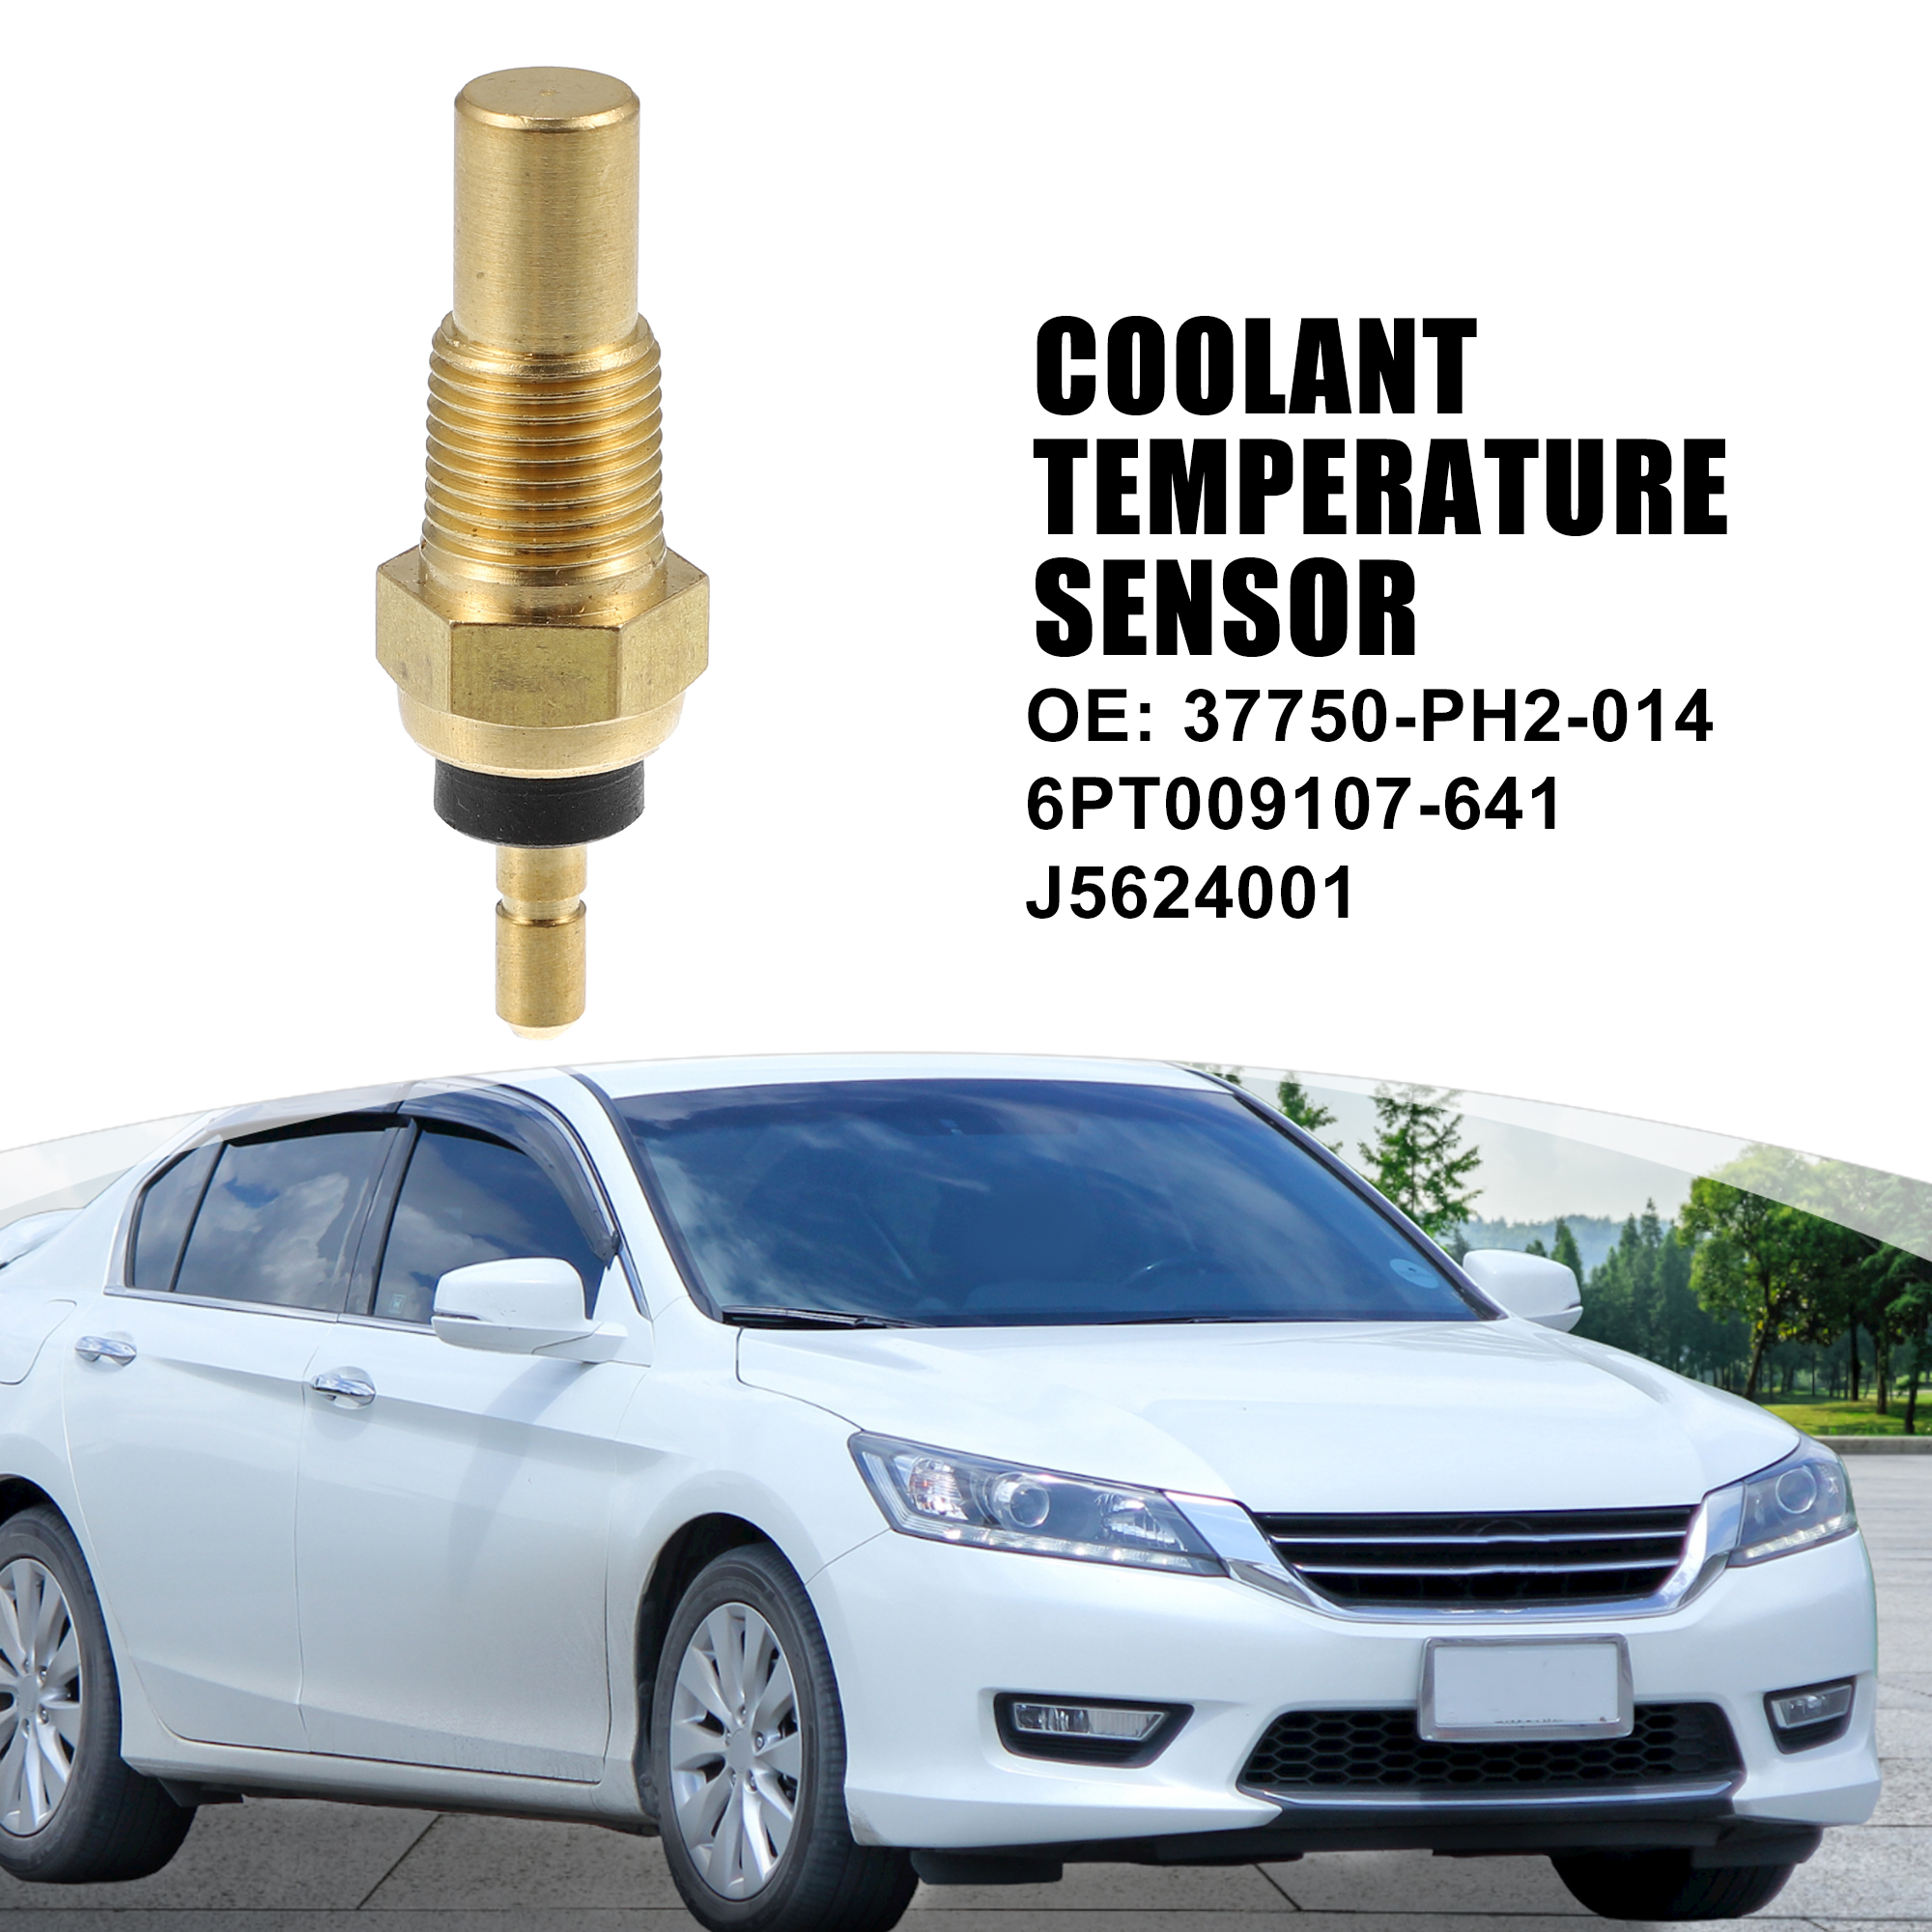 Unique Bargains 37750-PH2-014 6PT009107-641 Coolant Temperature Sensor Fit for Honda Accord